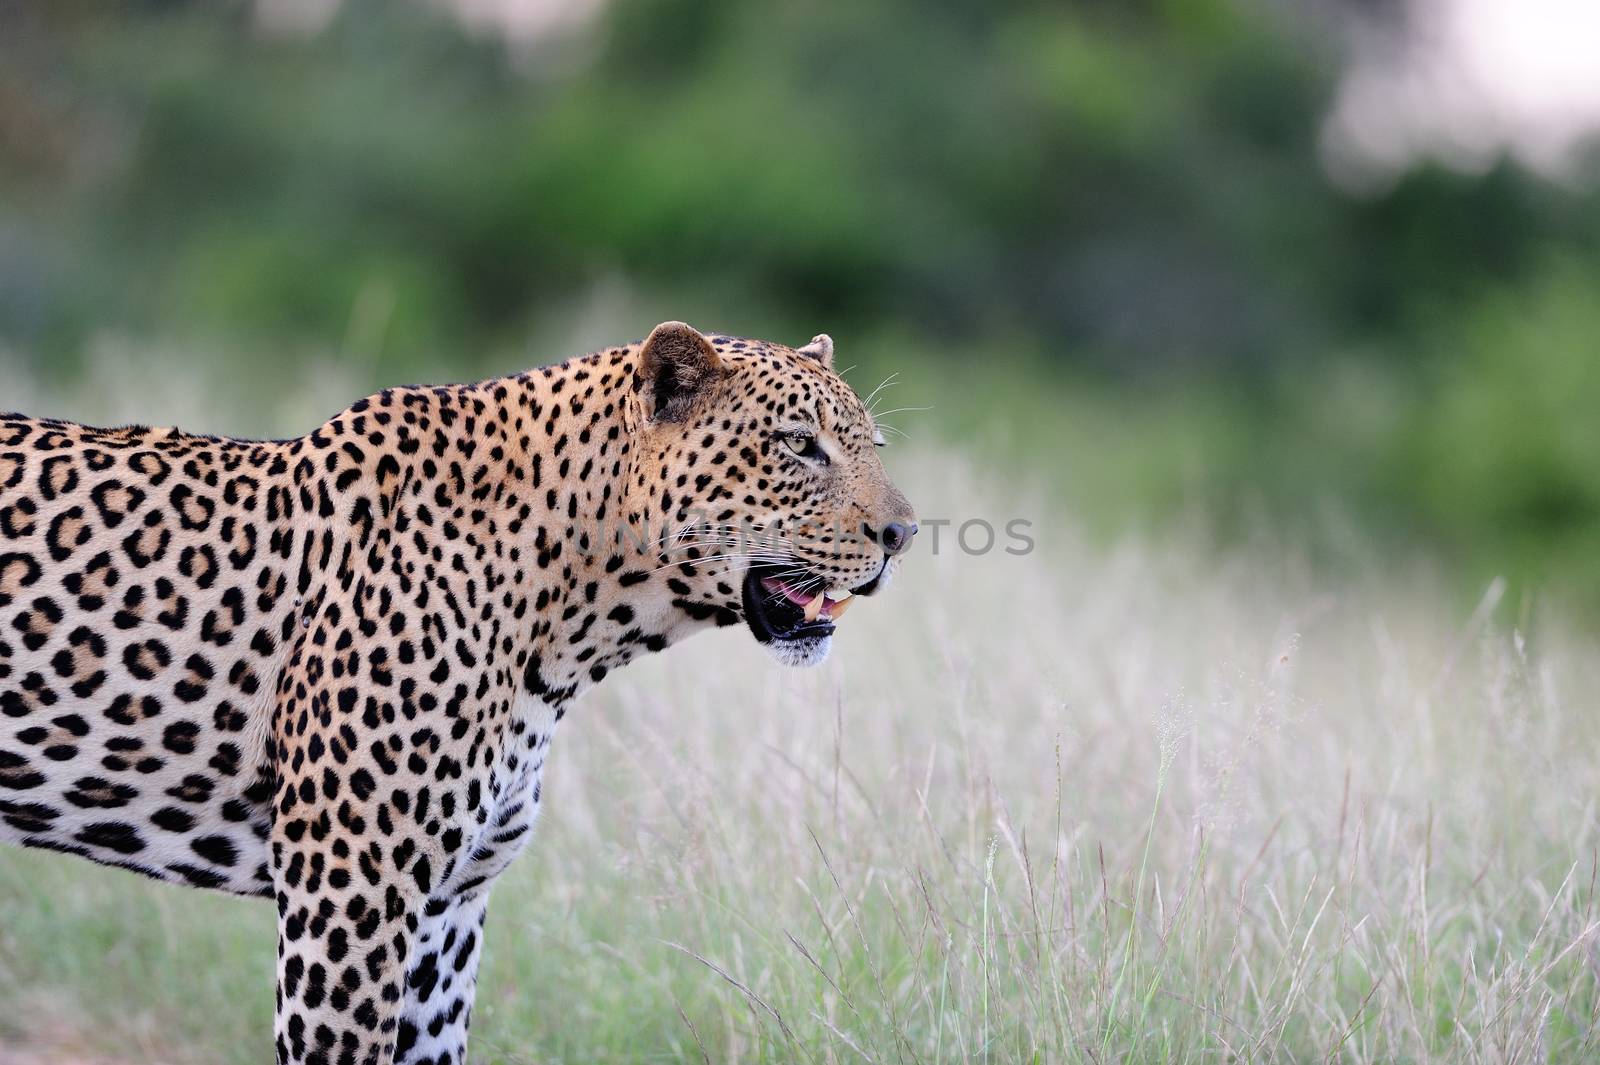 Leopard in the wilderness by ozkanzozmen